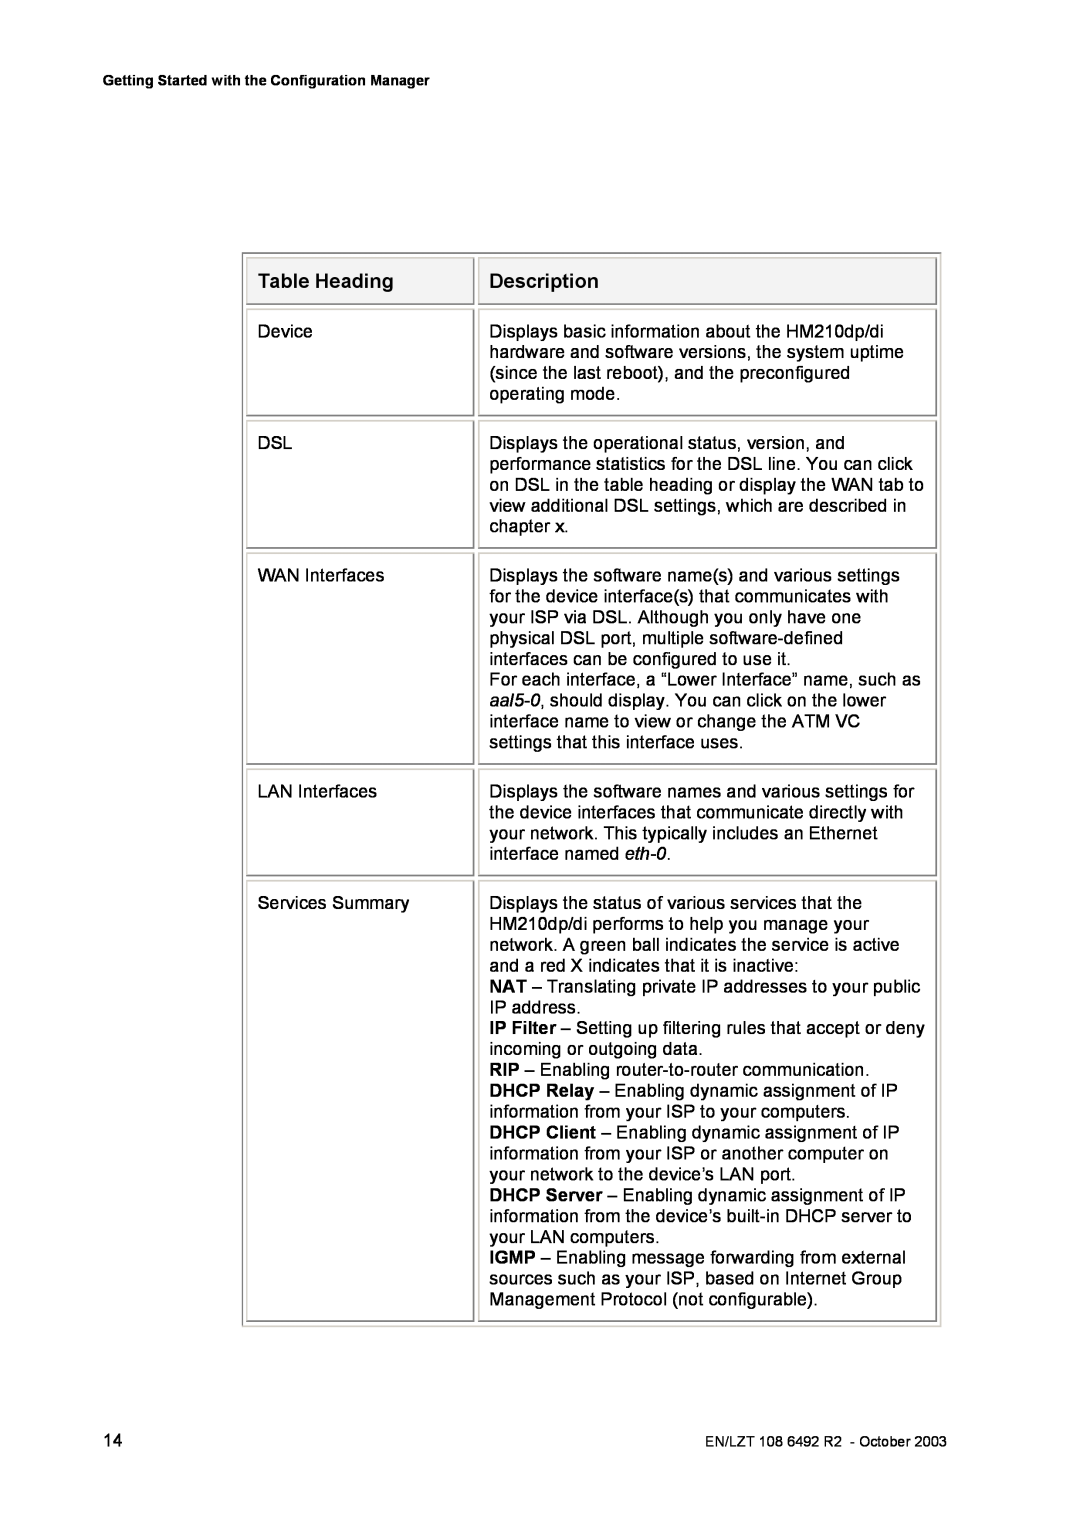 Garmin HM210DP/DI manual Table Heading, Description, Device DSL WAN Interfaces LAN Interfaces Services Summary 